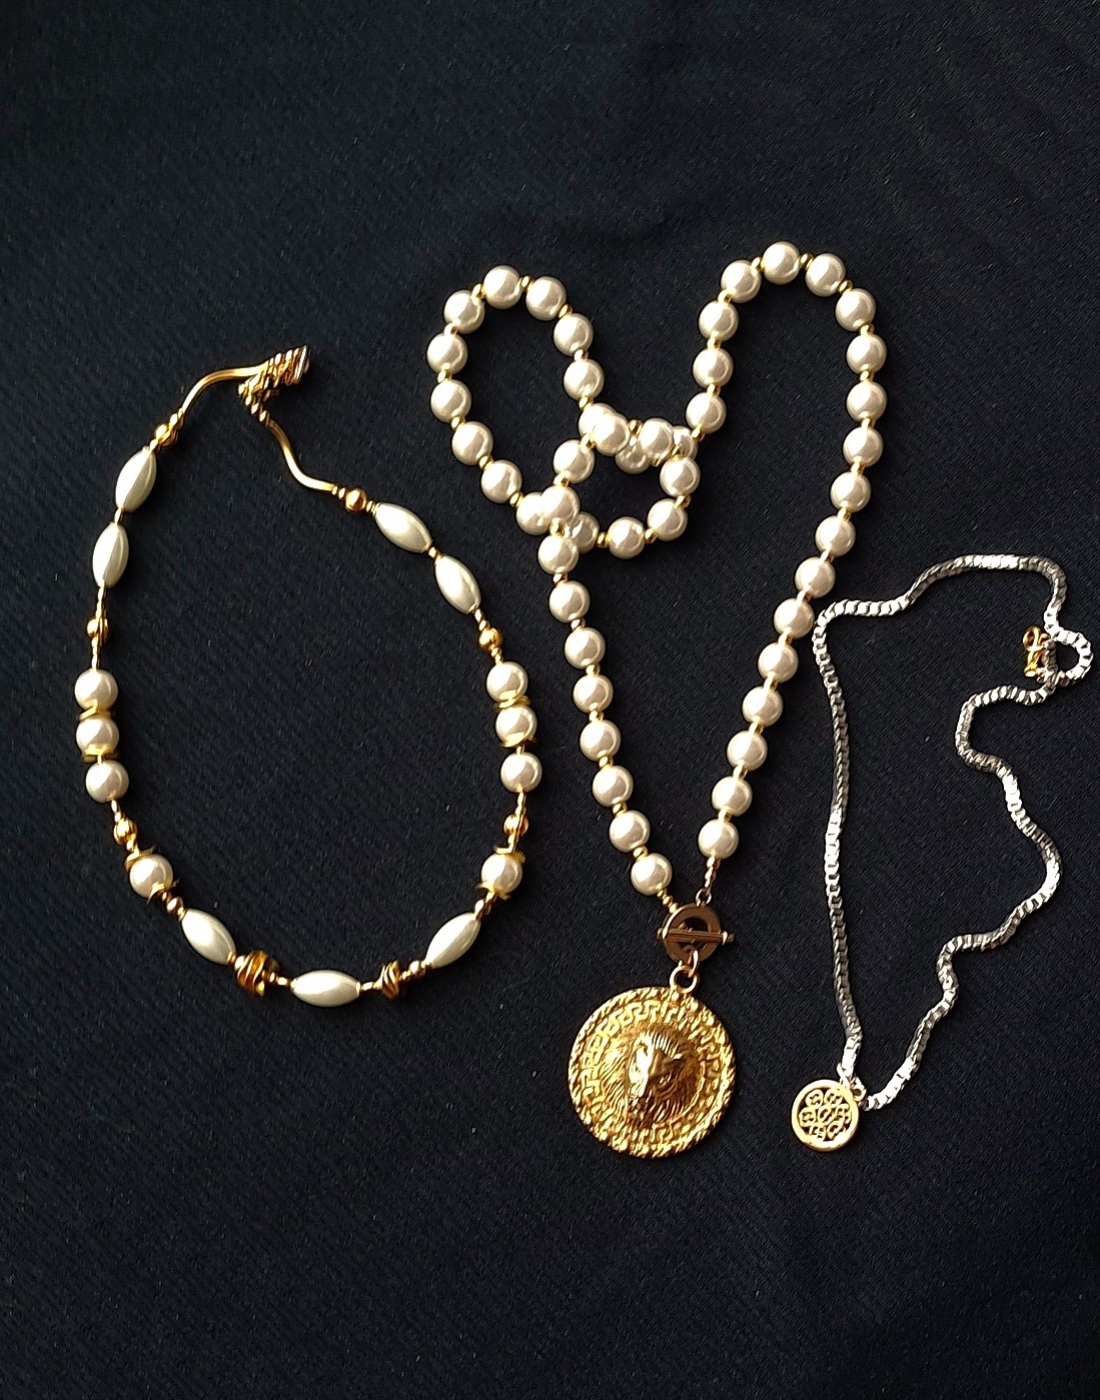 kompozycja 3 oddzielnych naszyjników w duchu bardzo modnej biżuterii Boho z mixu szklanych pereł i ozdób typu bali